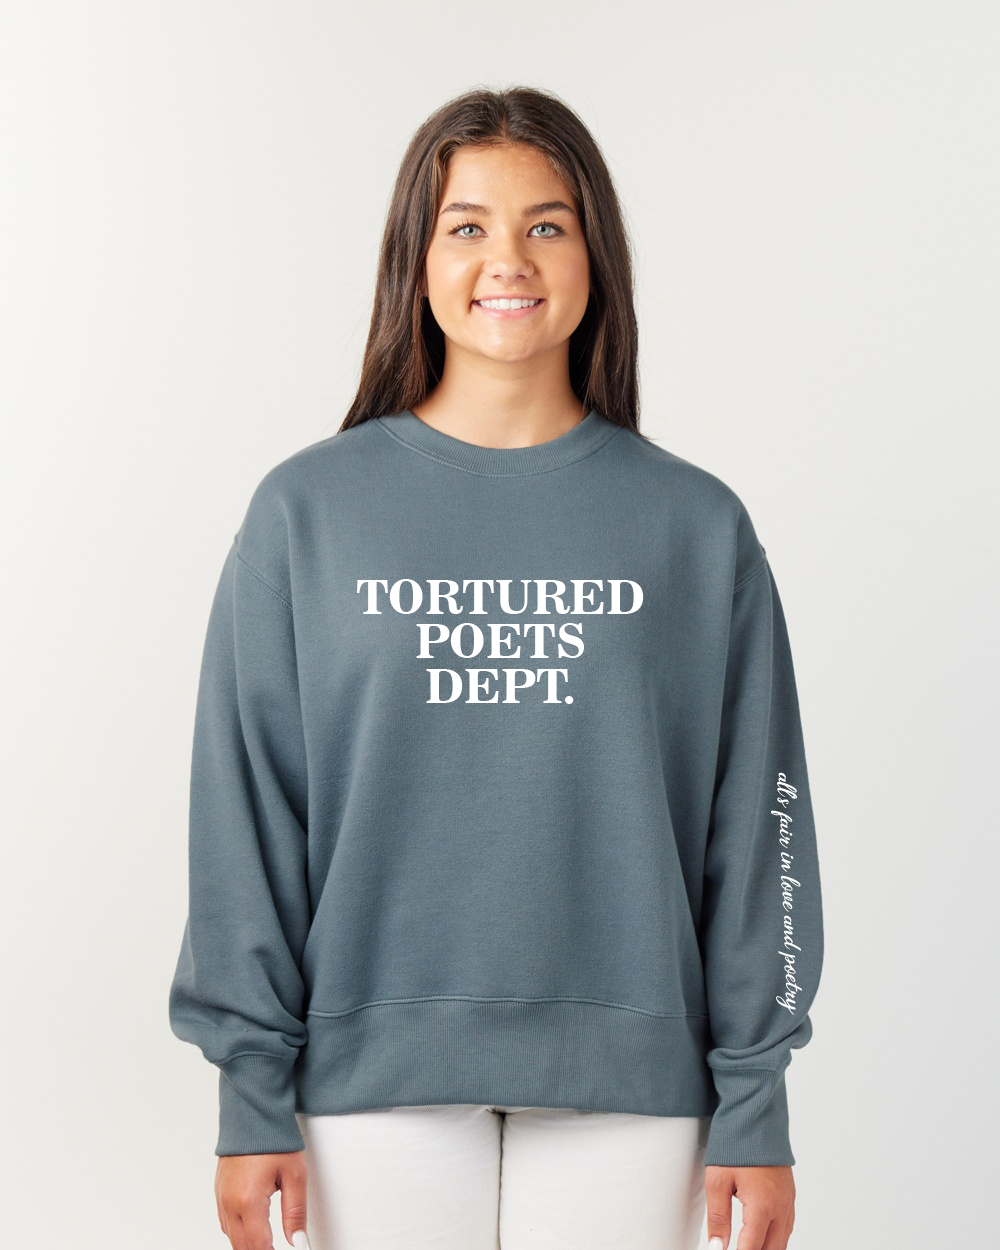 Tortured Poets Dept. Crewneck Sweatshirt